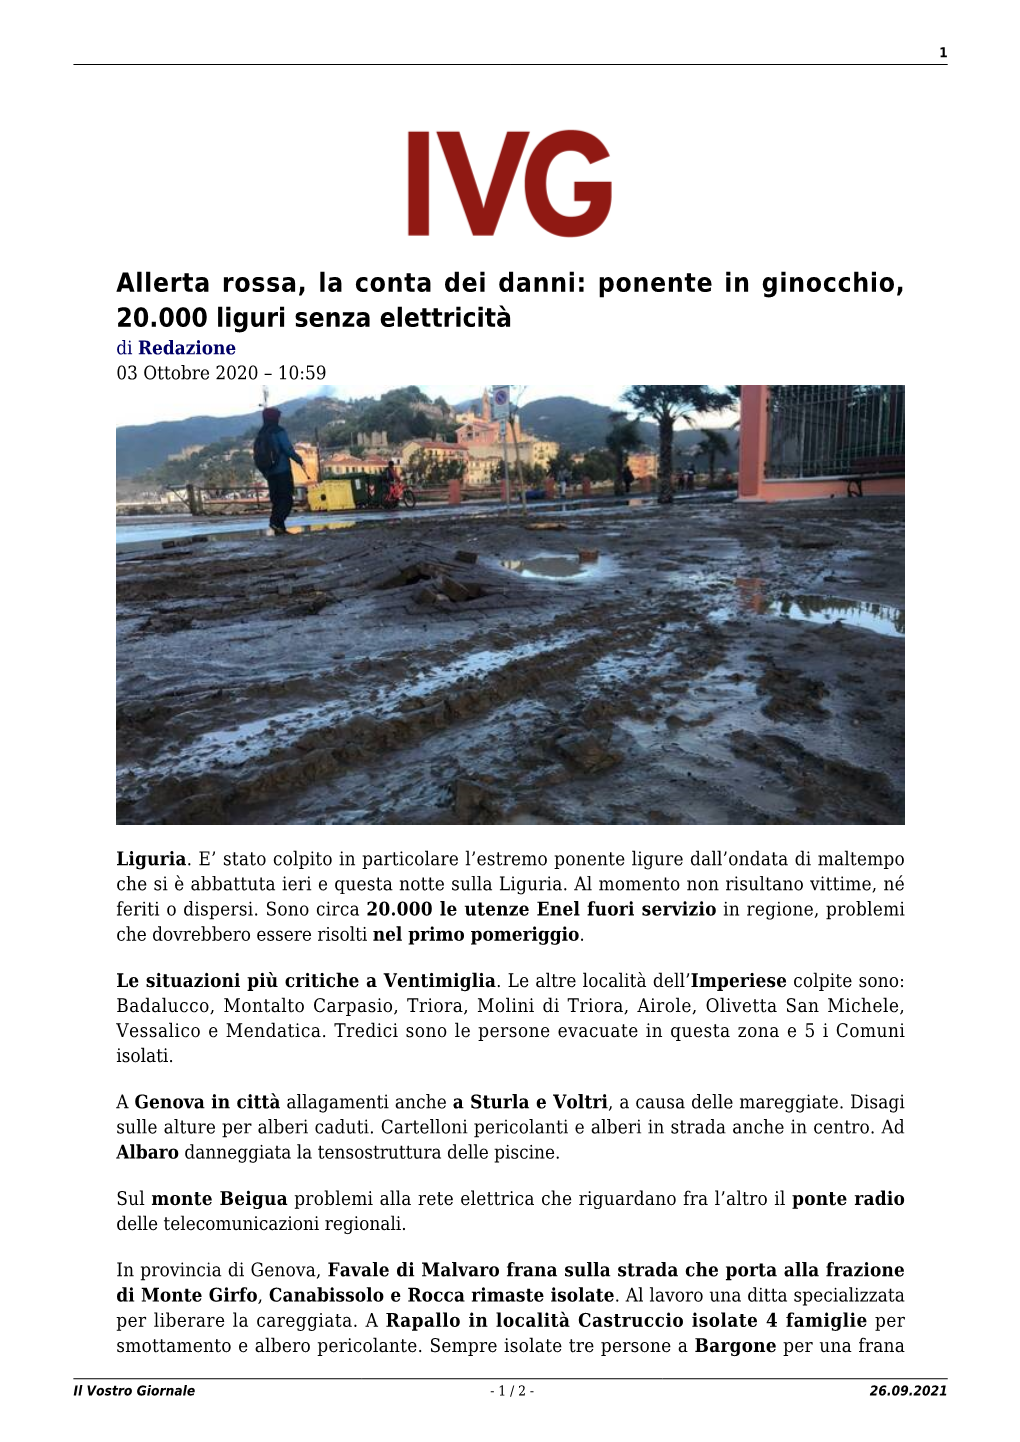 Allerta Rossa, La Conta Dei Danni: Ponente in Ginocchio, 20.000 Liguri Senza Elettricità Di Redazione 03 Ottobre 2020 – 10:59